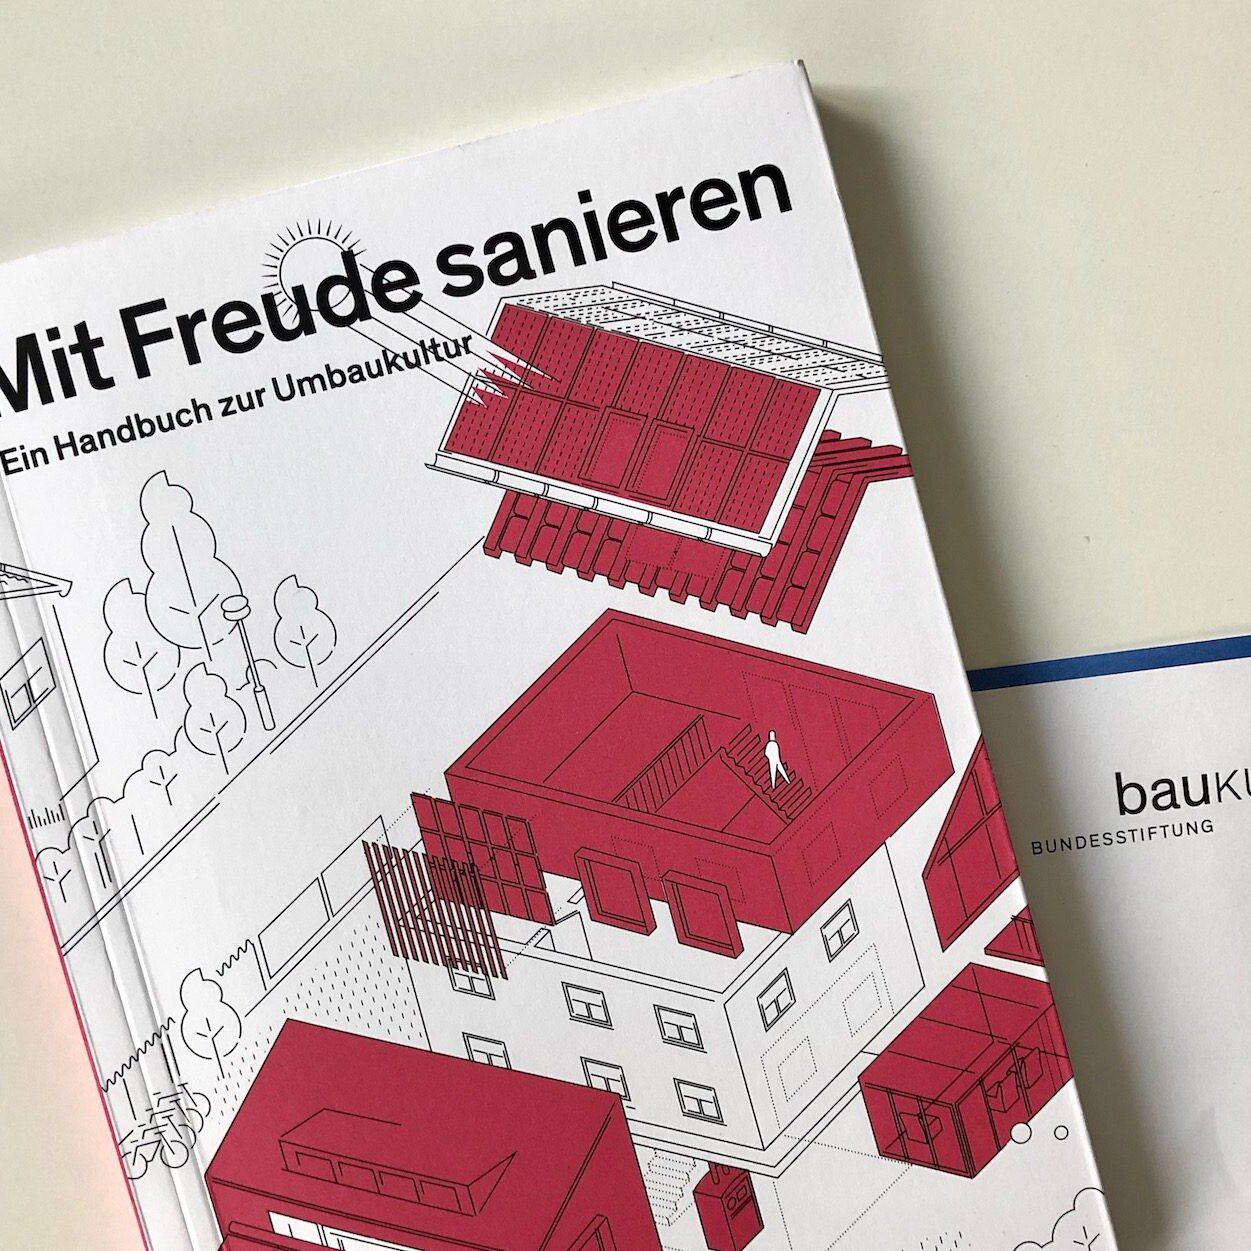 Umbaukultur konkret: Bundesstiftung Baukultur veröffentlicht kostenloses Handbuch mit vielen Praxisbeispielen (Foto: Eric Sturm)